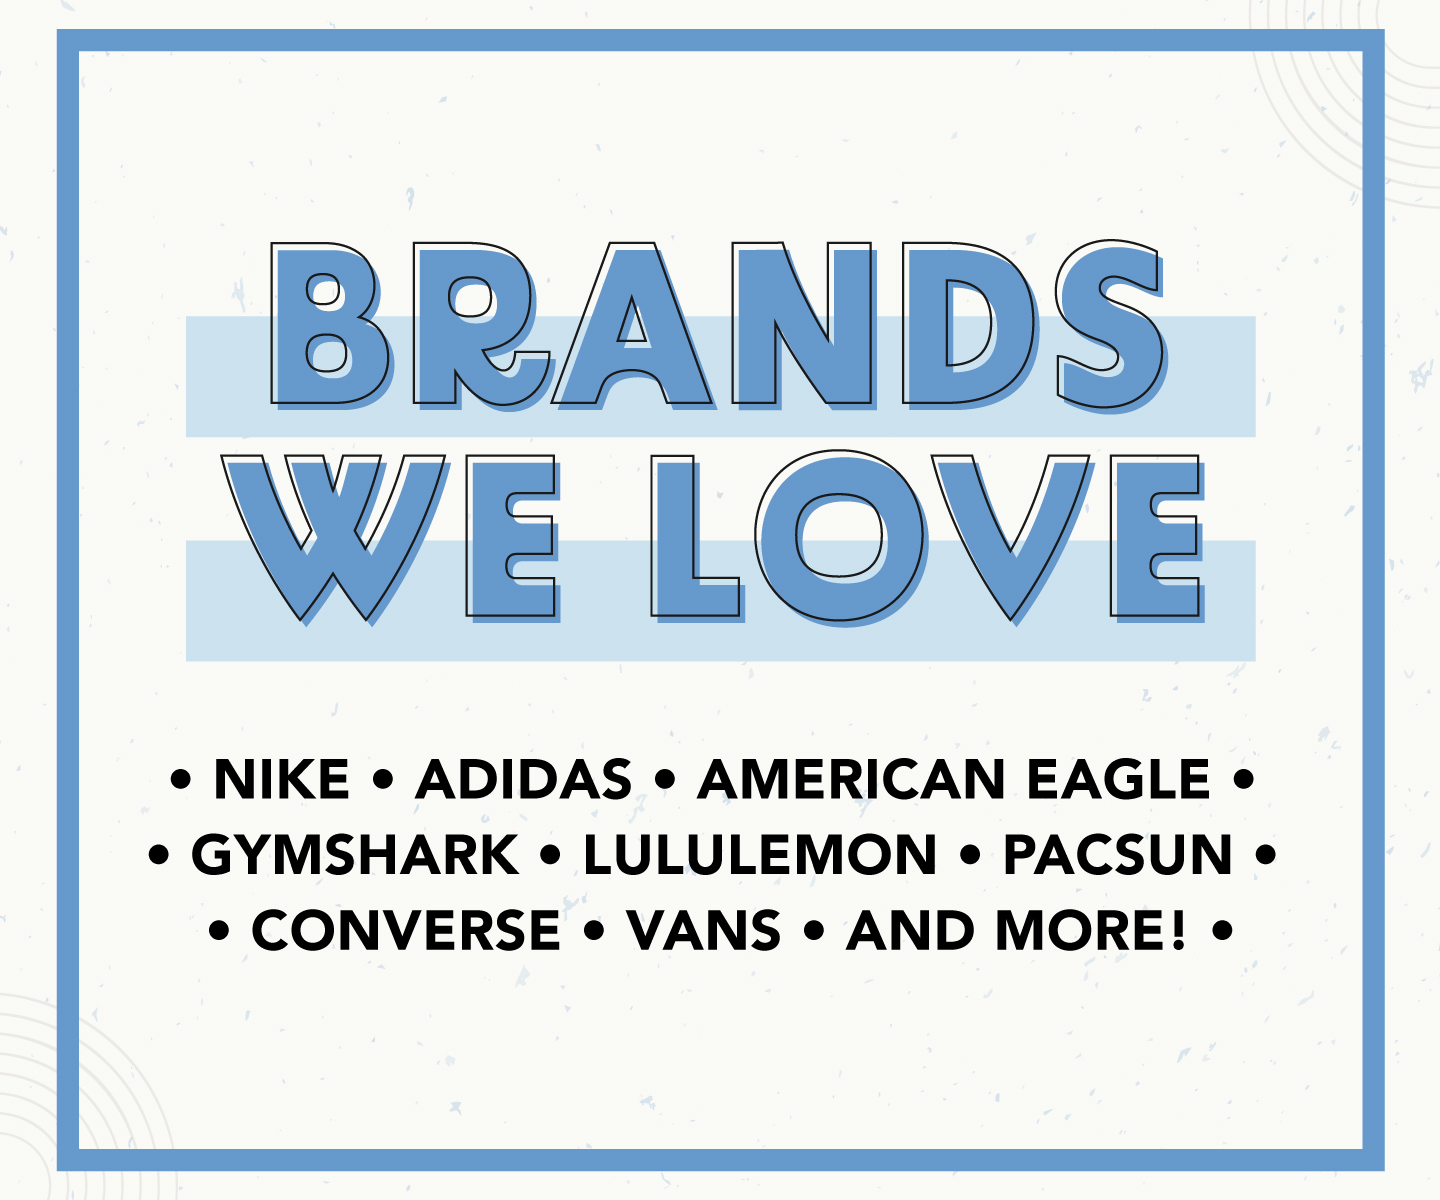 Brands We Love